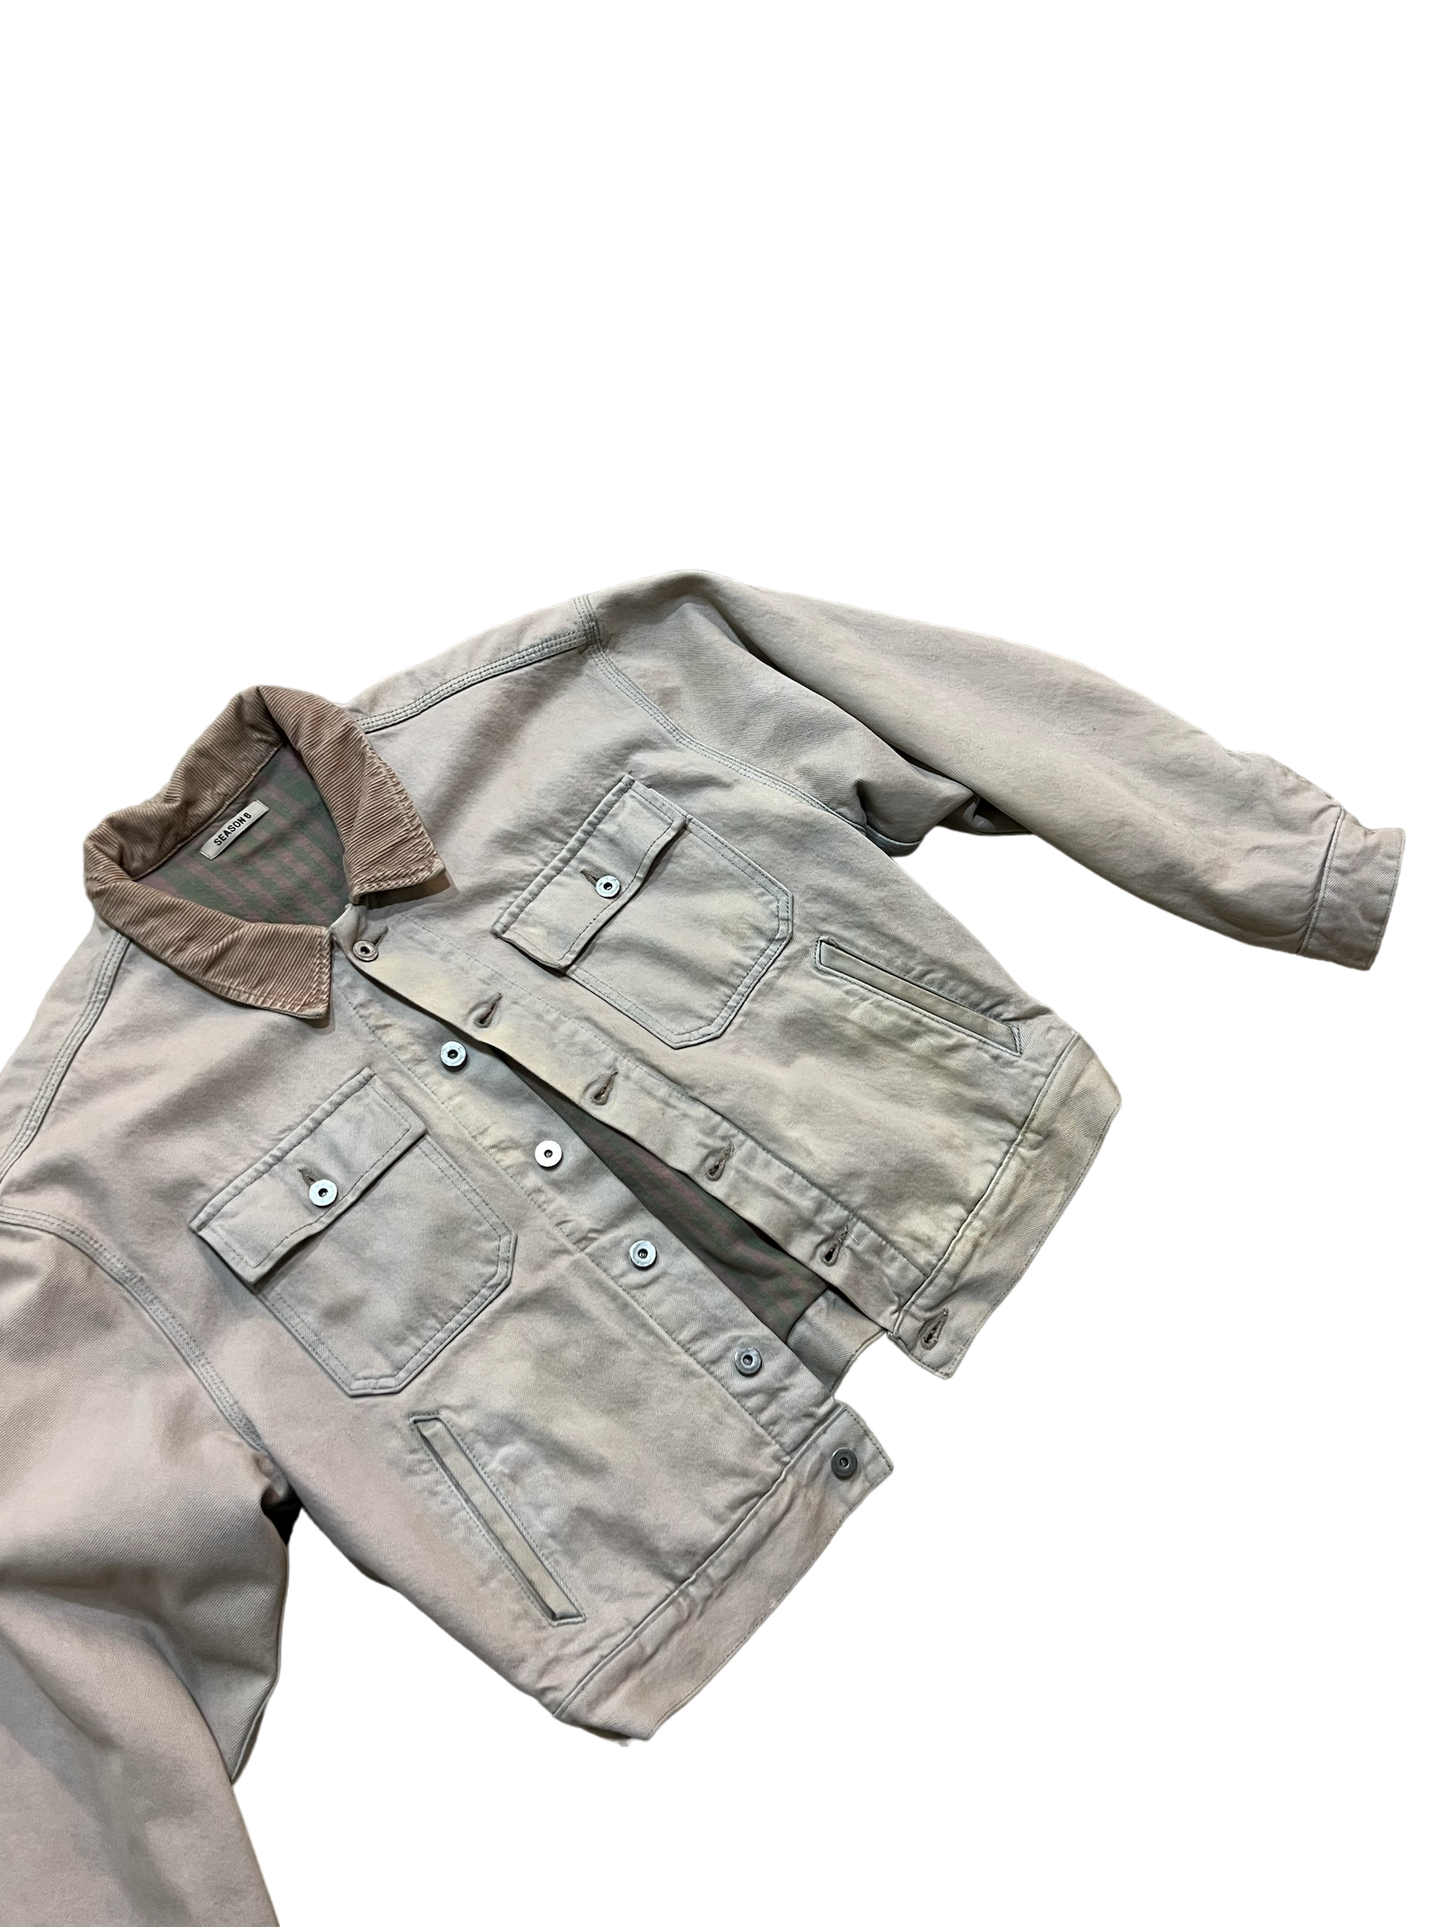 YZY Season 6 Flannel Lined Jacket Sample